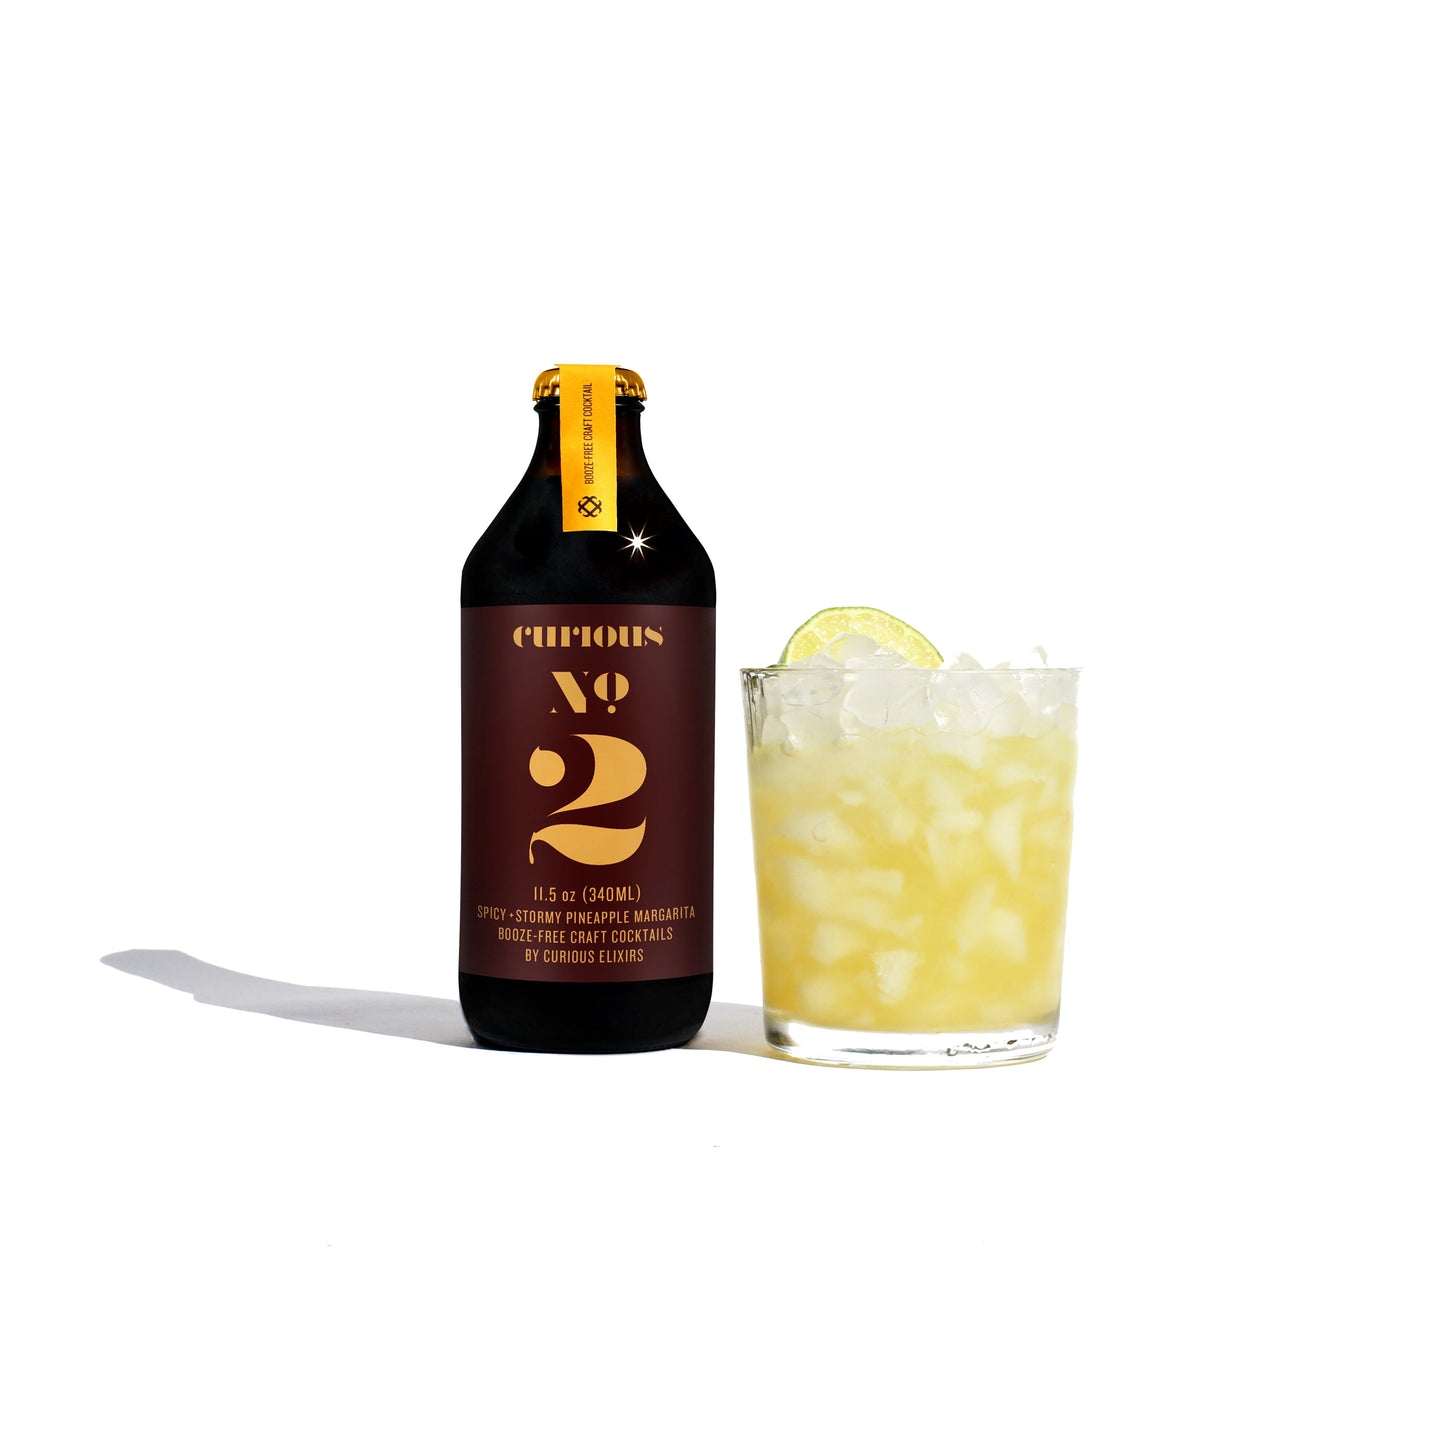 Curious Elixir No. 2 (Pineapple Margarita/Dark 'n' Stormy) - (4-pack)